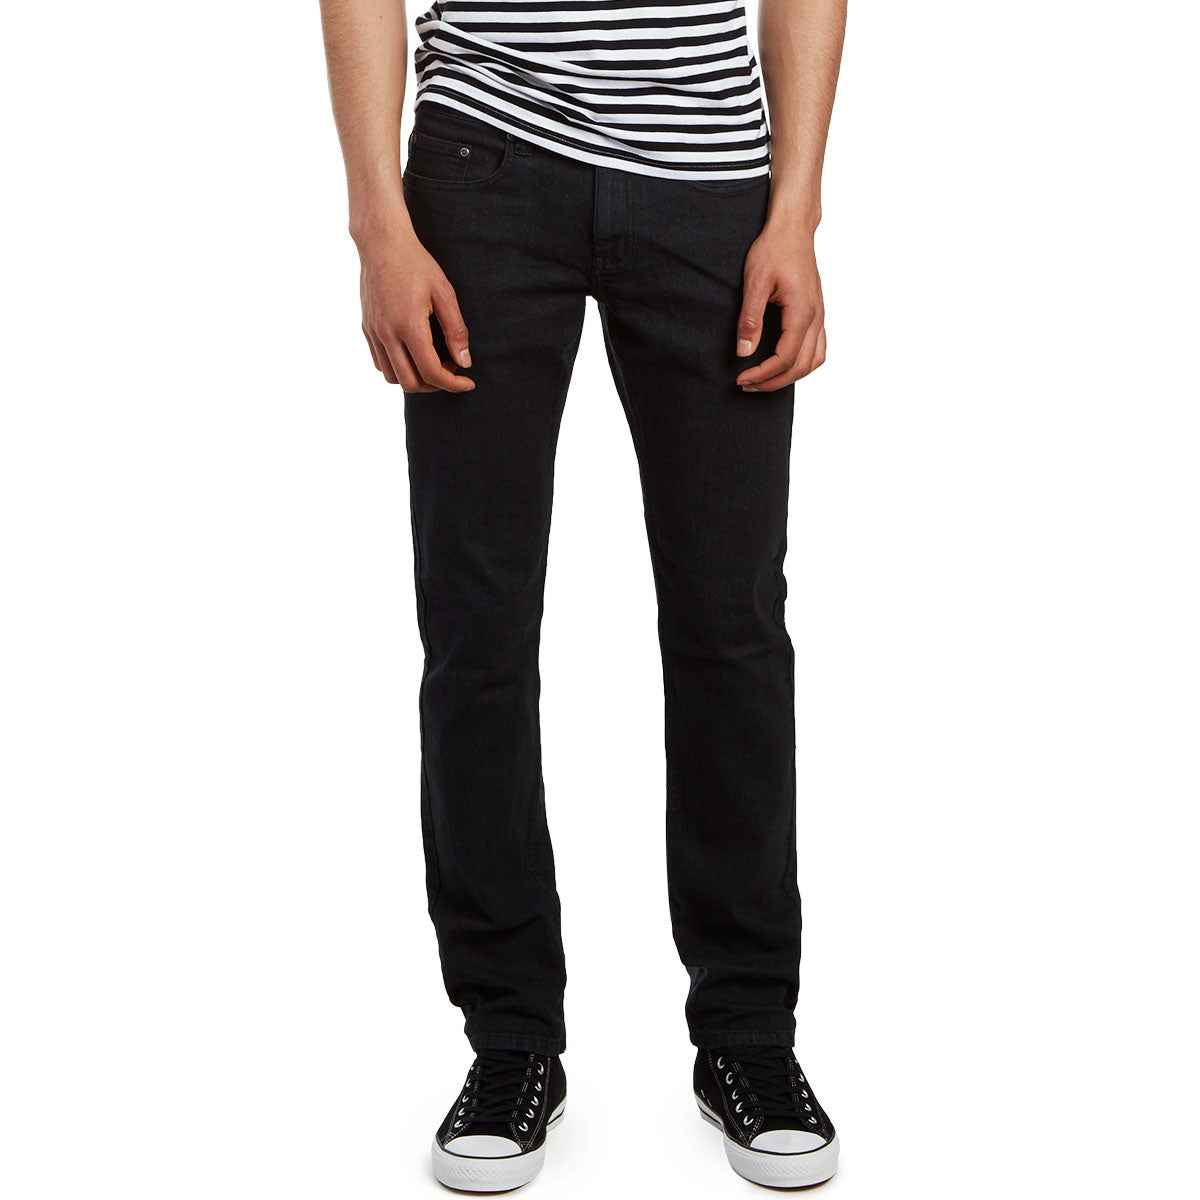 CCS Slim Fit Jeans - Washed Black image 3